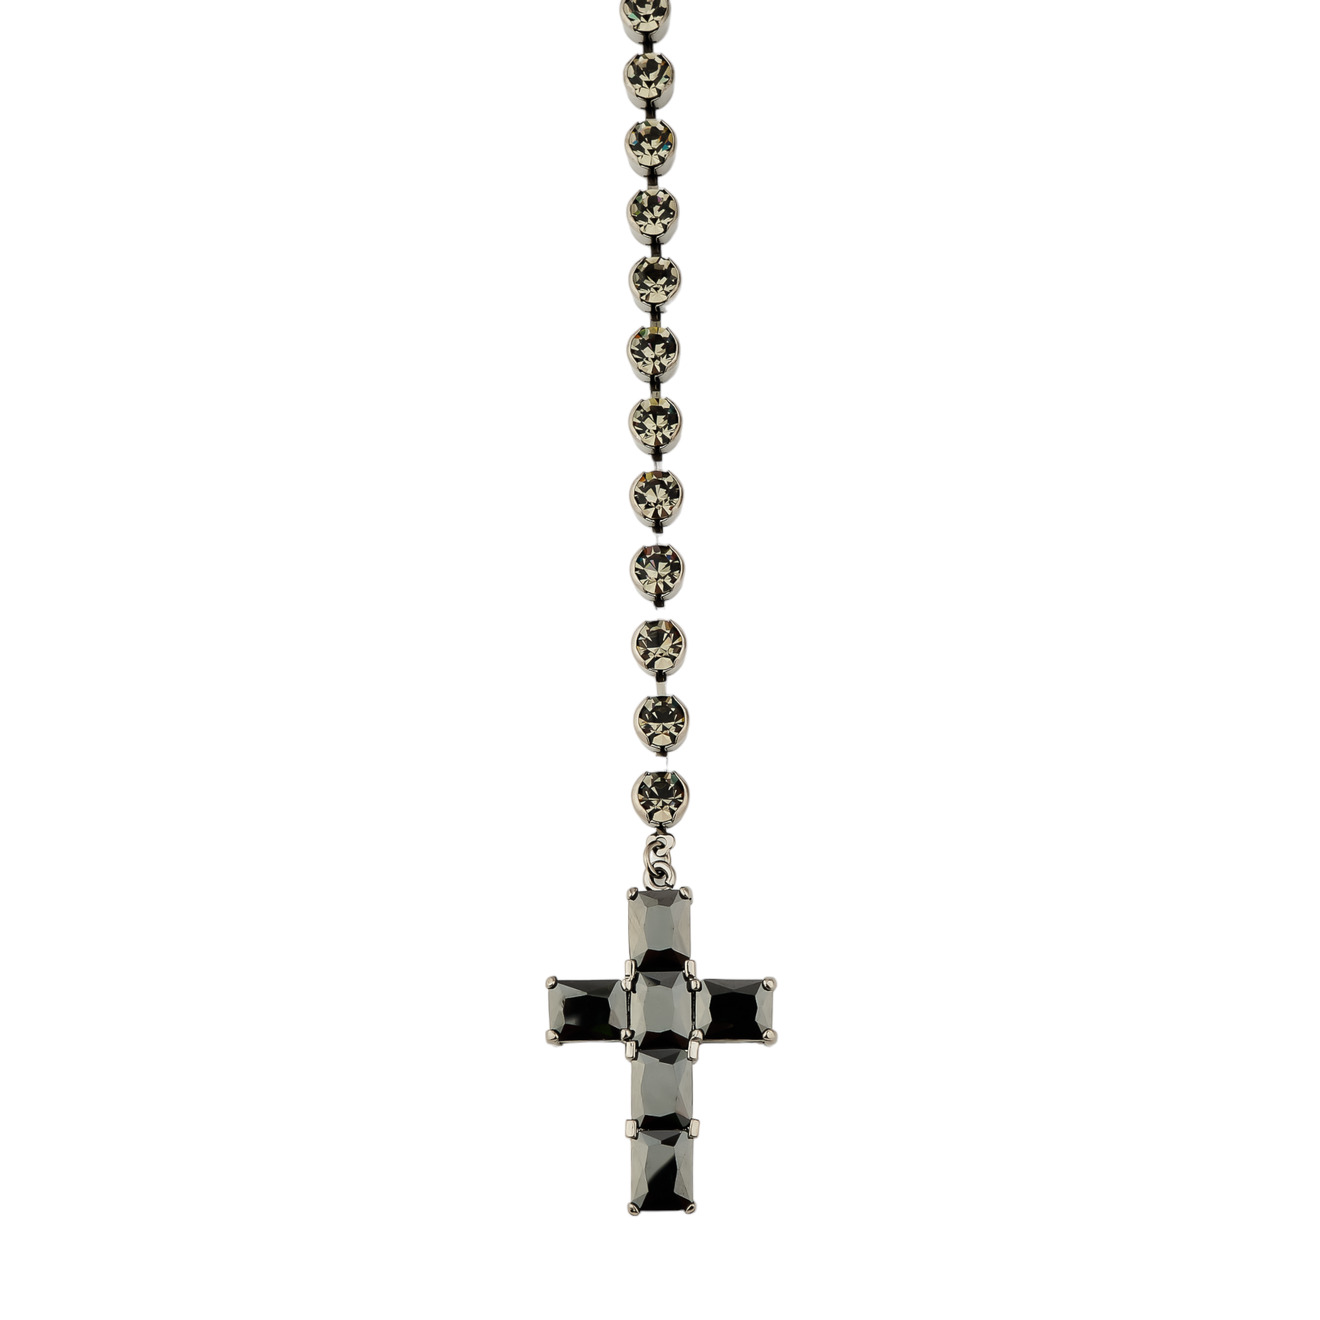 Herald Percy Сотуар с кристаллами и подвеской крестом черного цвета herald percy золотистое длинное колье с крестом с кристаллами